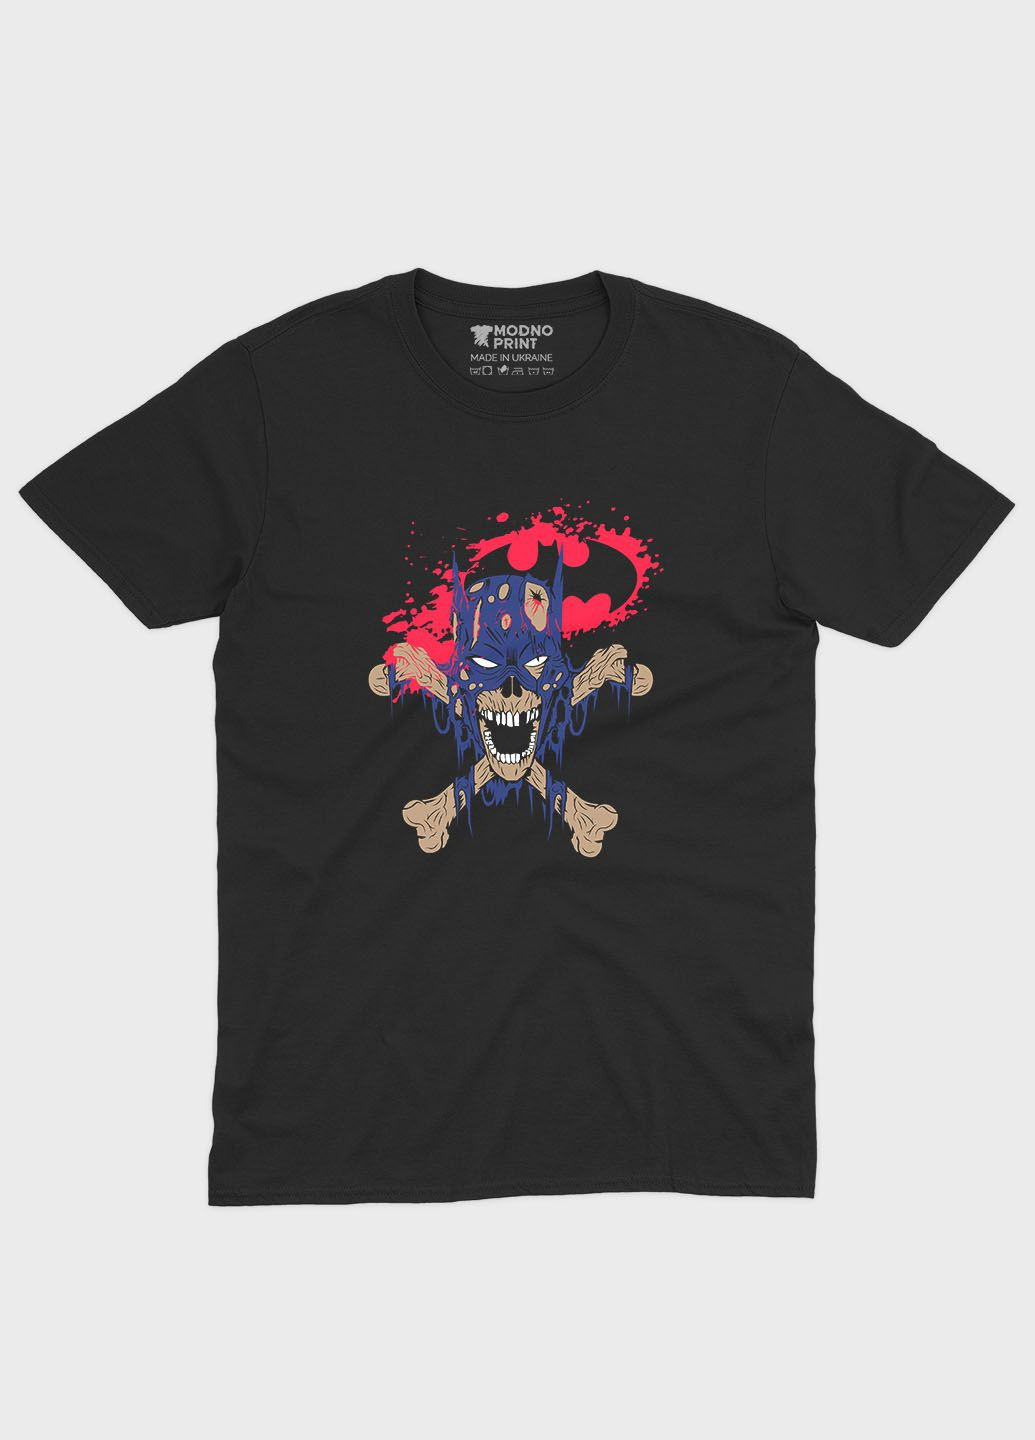 Чорна демісезонна футболка для хлопчика з принтом супергероя - бетмен (ts001-1-bl-006-003-038-b) Modno